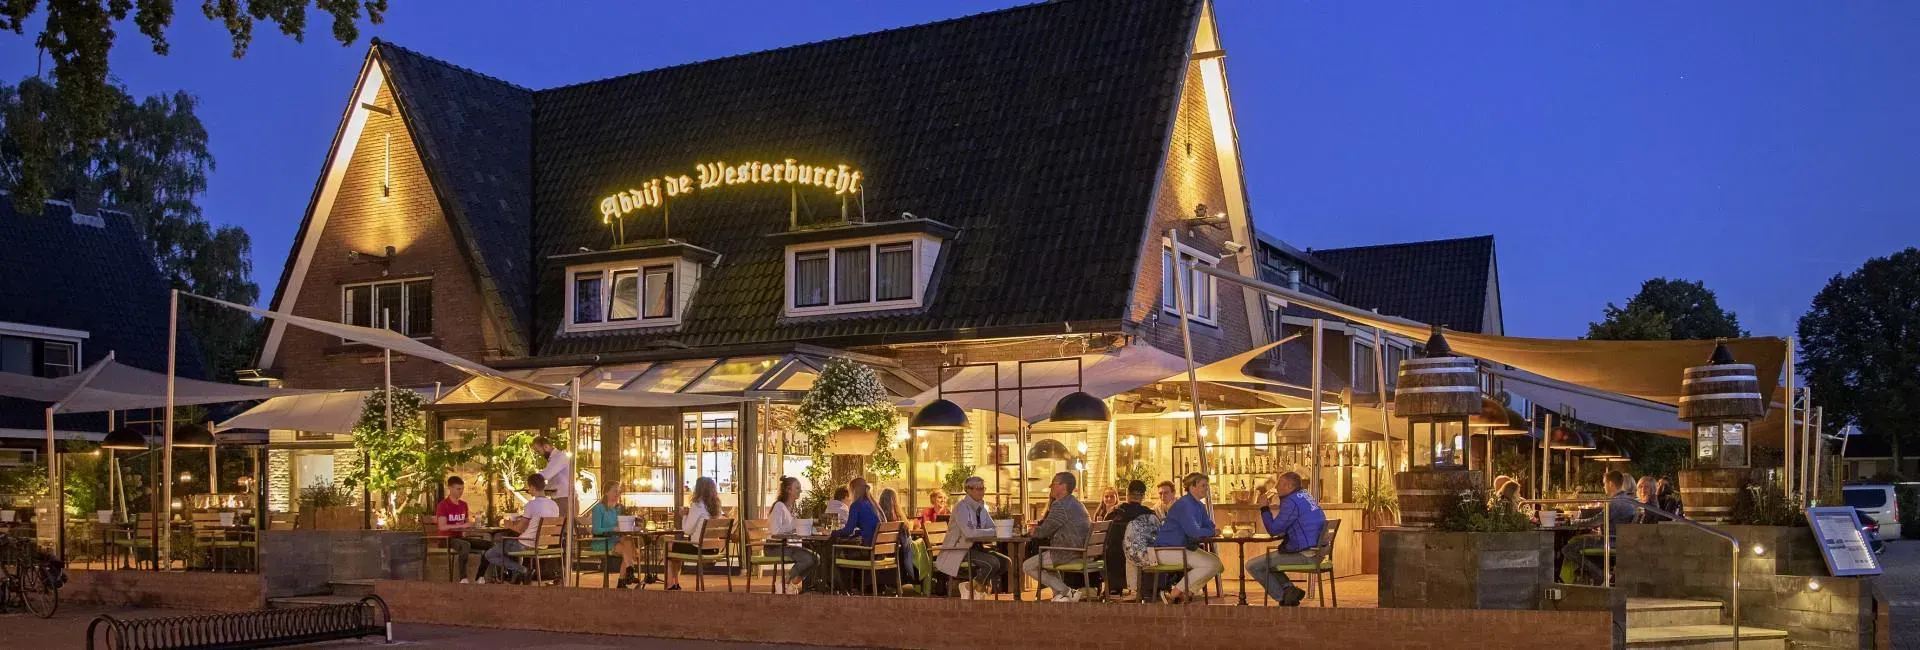 Hotel & Restaurant Abdij de Westerburcht in Westerbork